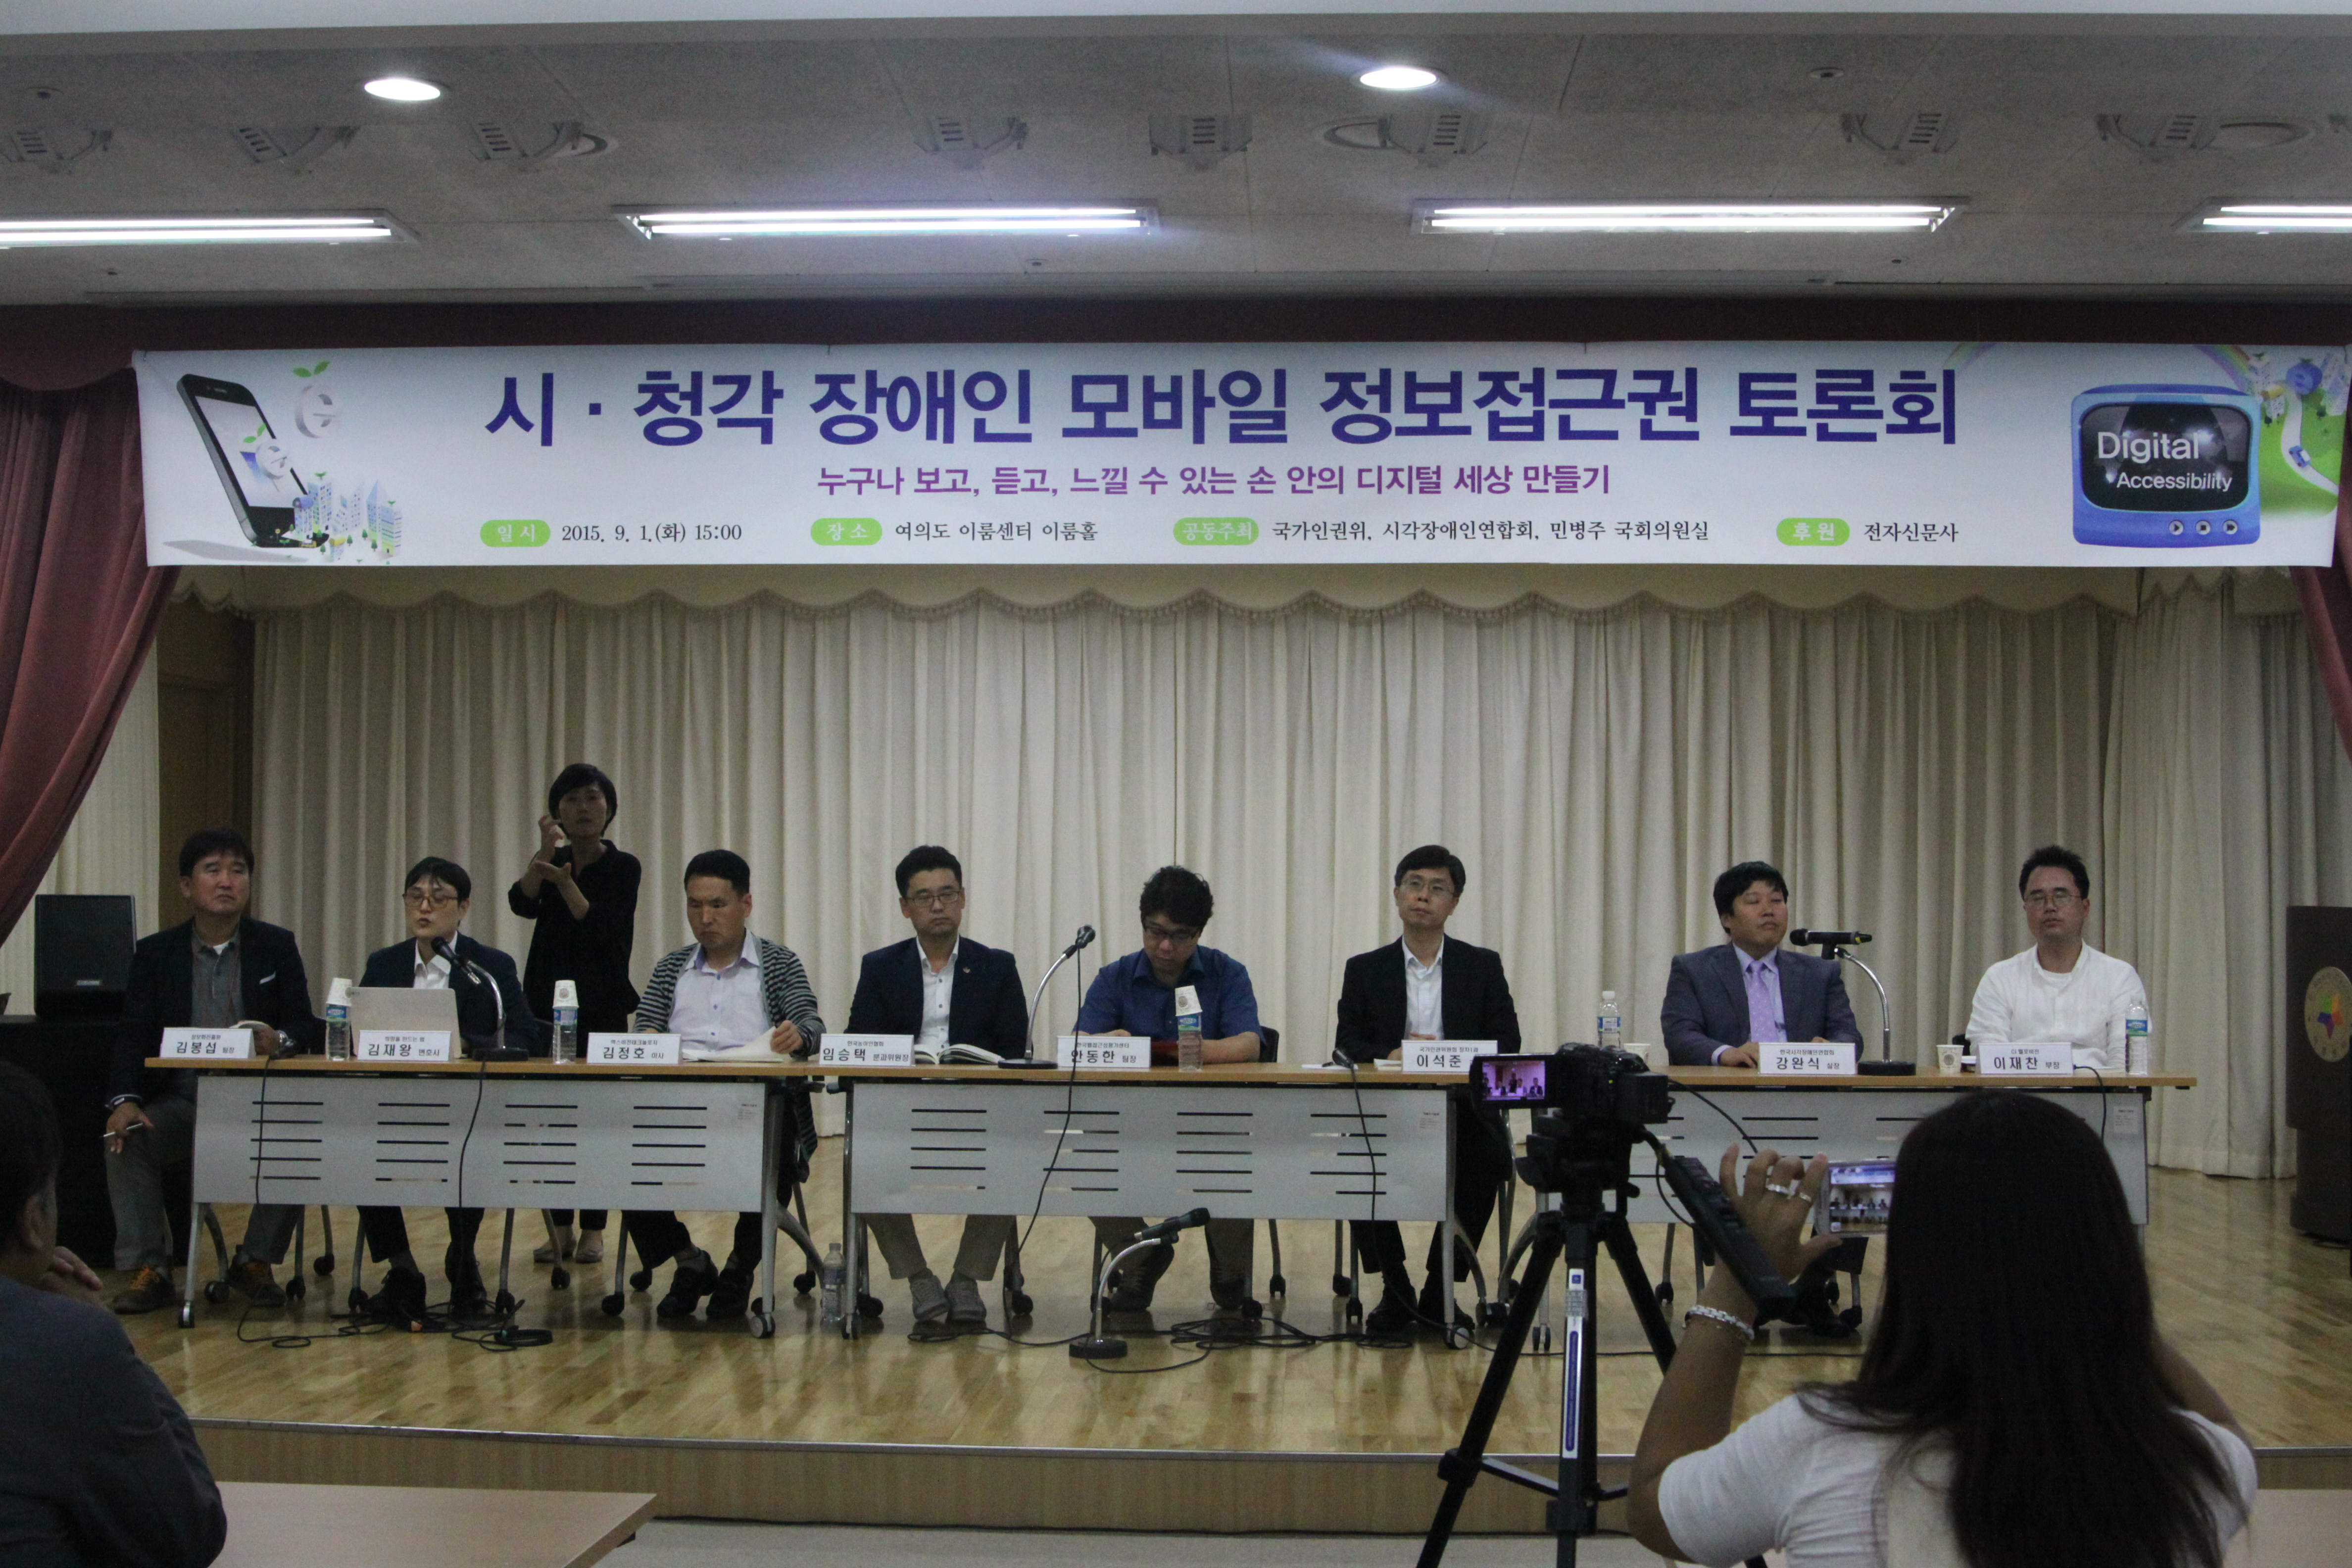 시·청각 장애인의 모바일 정보접근권 토론회